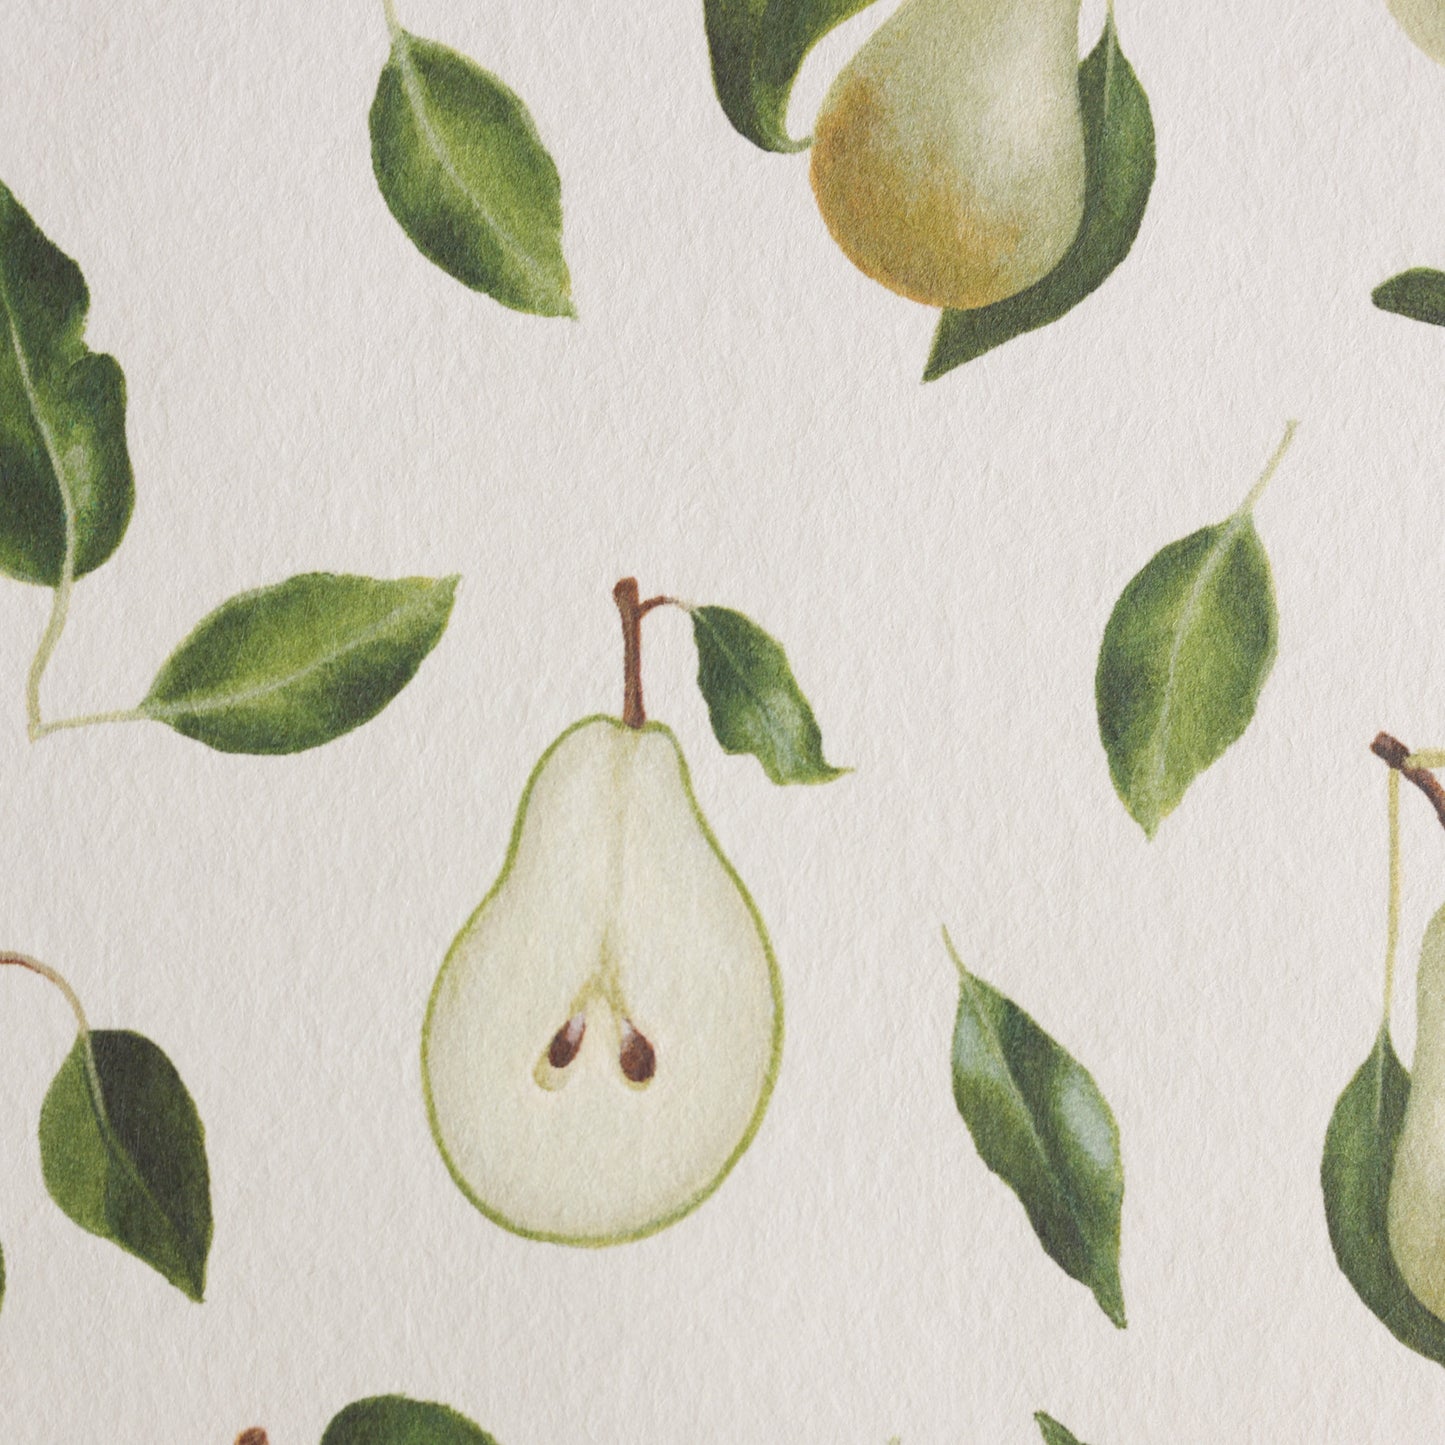 'Pears' wallpaper roll